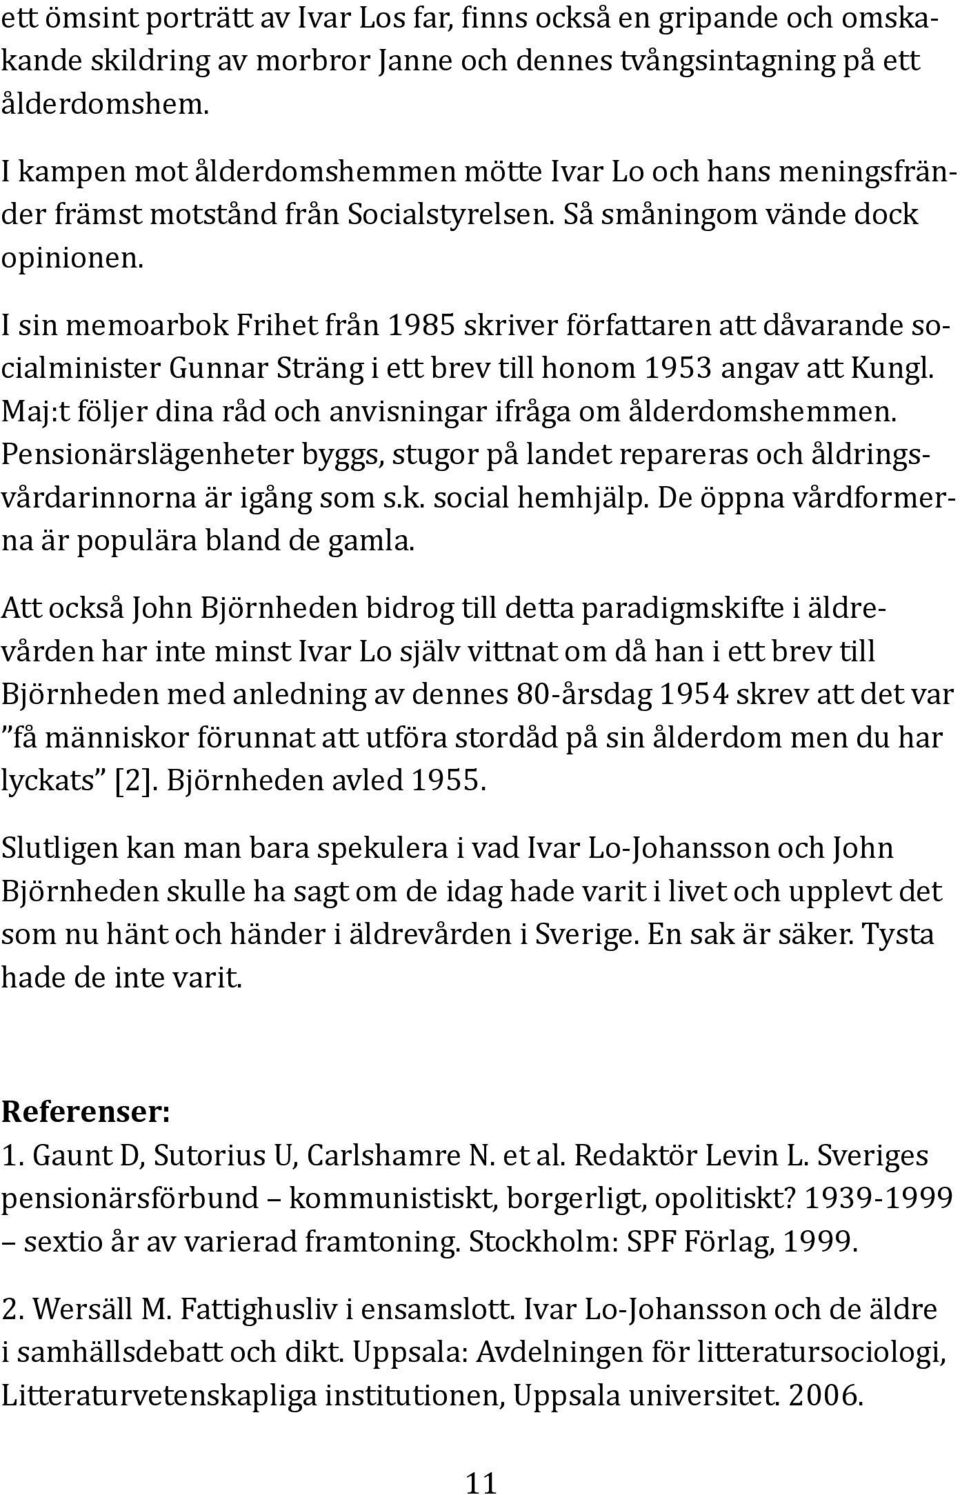 I sin memoarbok Frihet från 1985 skriver författaren att dåvarande socialminister Gunnar Sträng i ett brev till honom 1953 angav att Kungl.